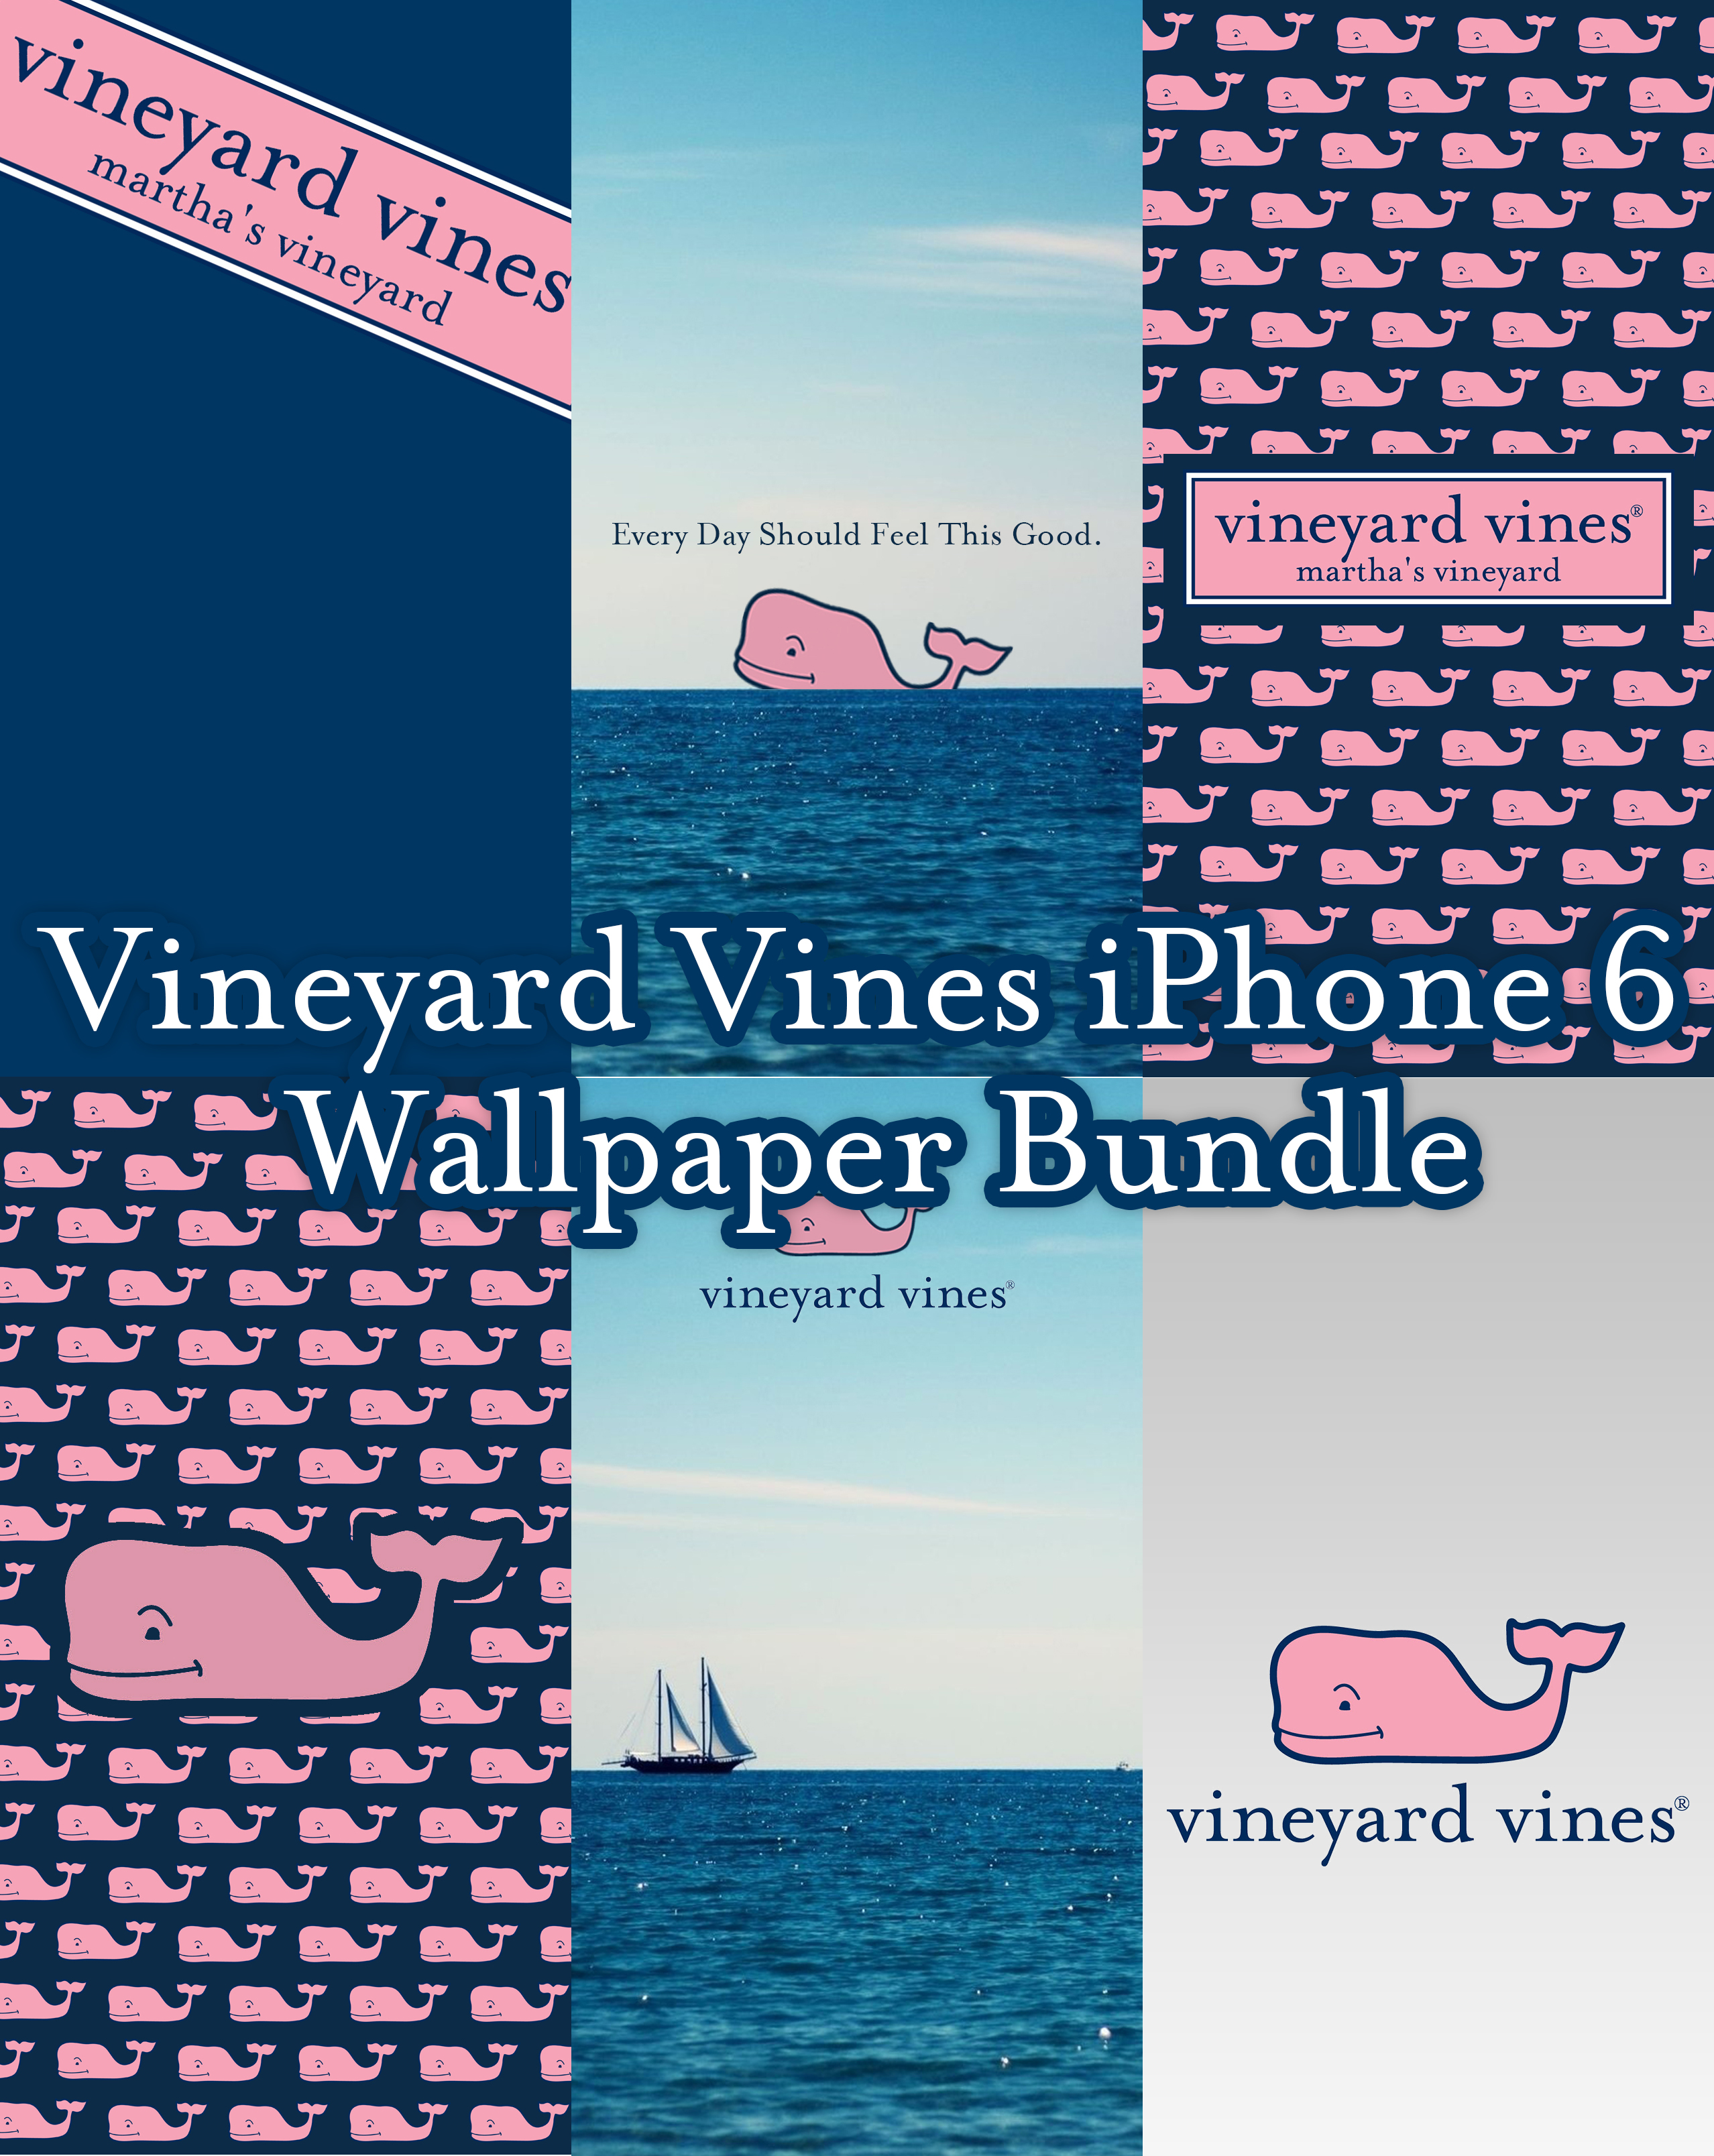 Vineyard Vines iPhone 6 Wallpapers by